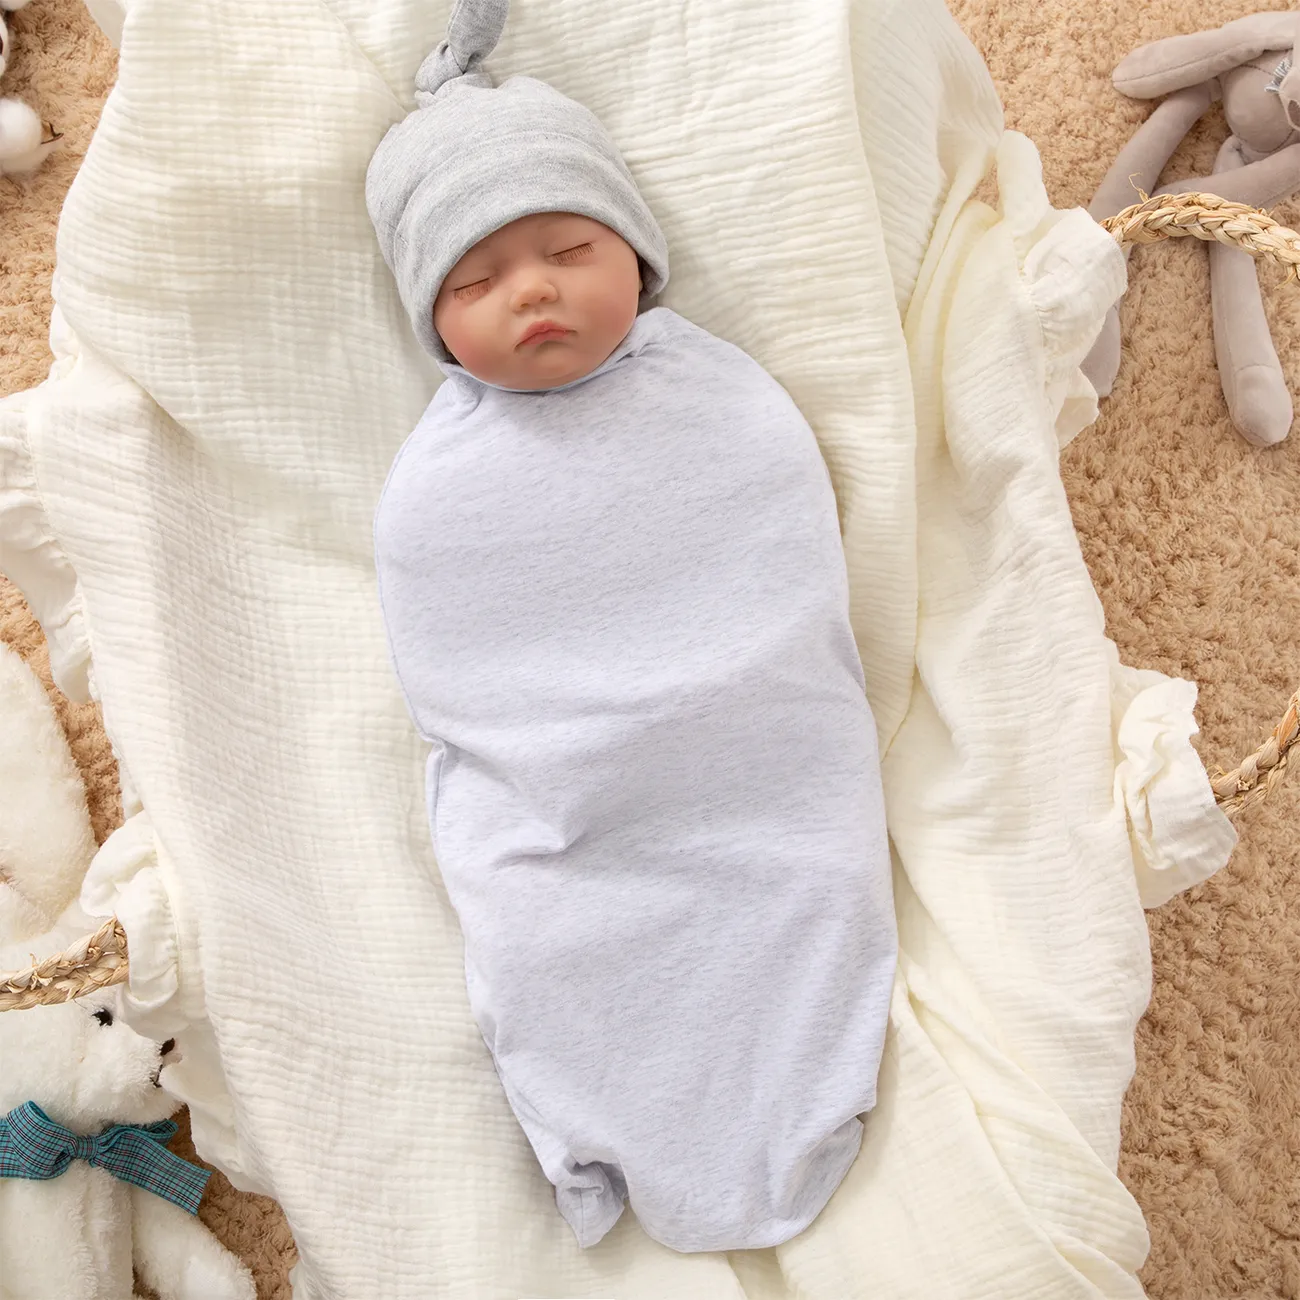 Baby Swaddle Blanket Passeggino Avvolgere morbido caldo coperta neonato  sacco a pelo Solo 6,99 € PatPat EUR Cellulare